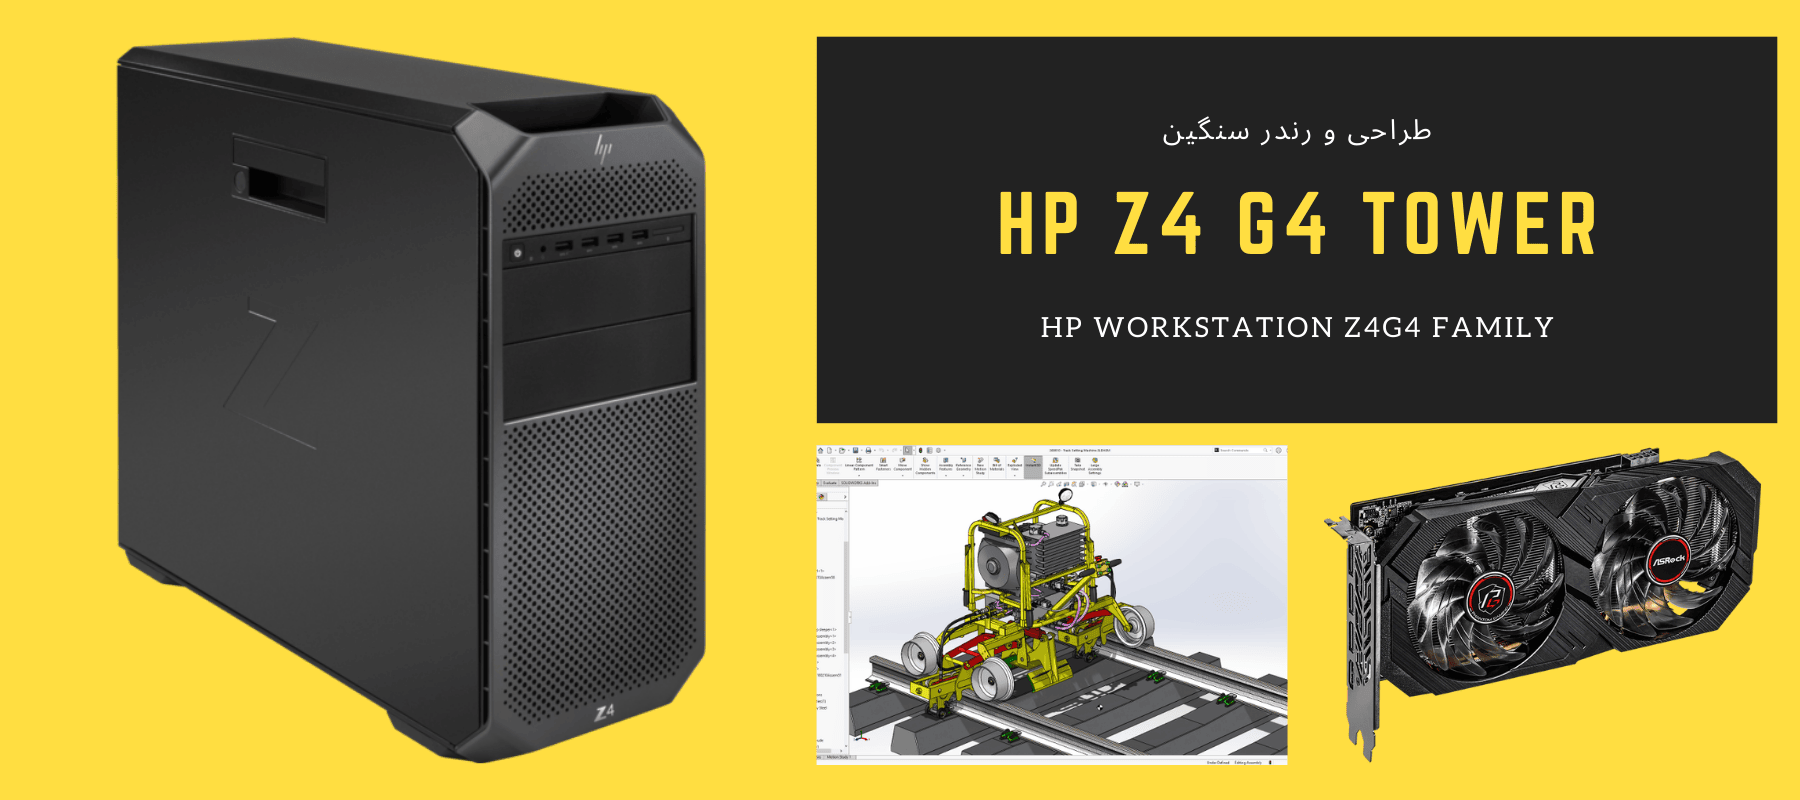 کیس ورک استیشن استوک HP Z4 G4 TOWER WS پردازنده i7 7800x نسل 7